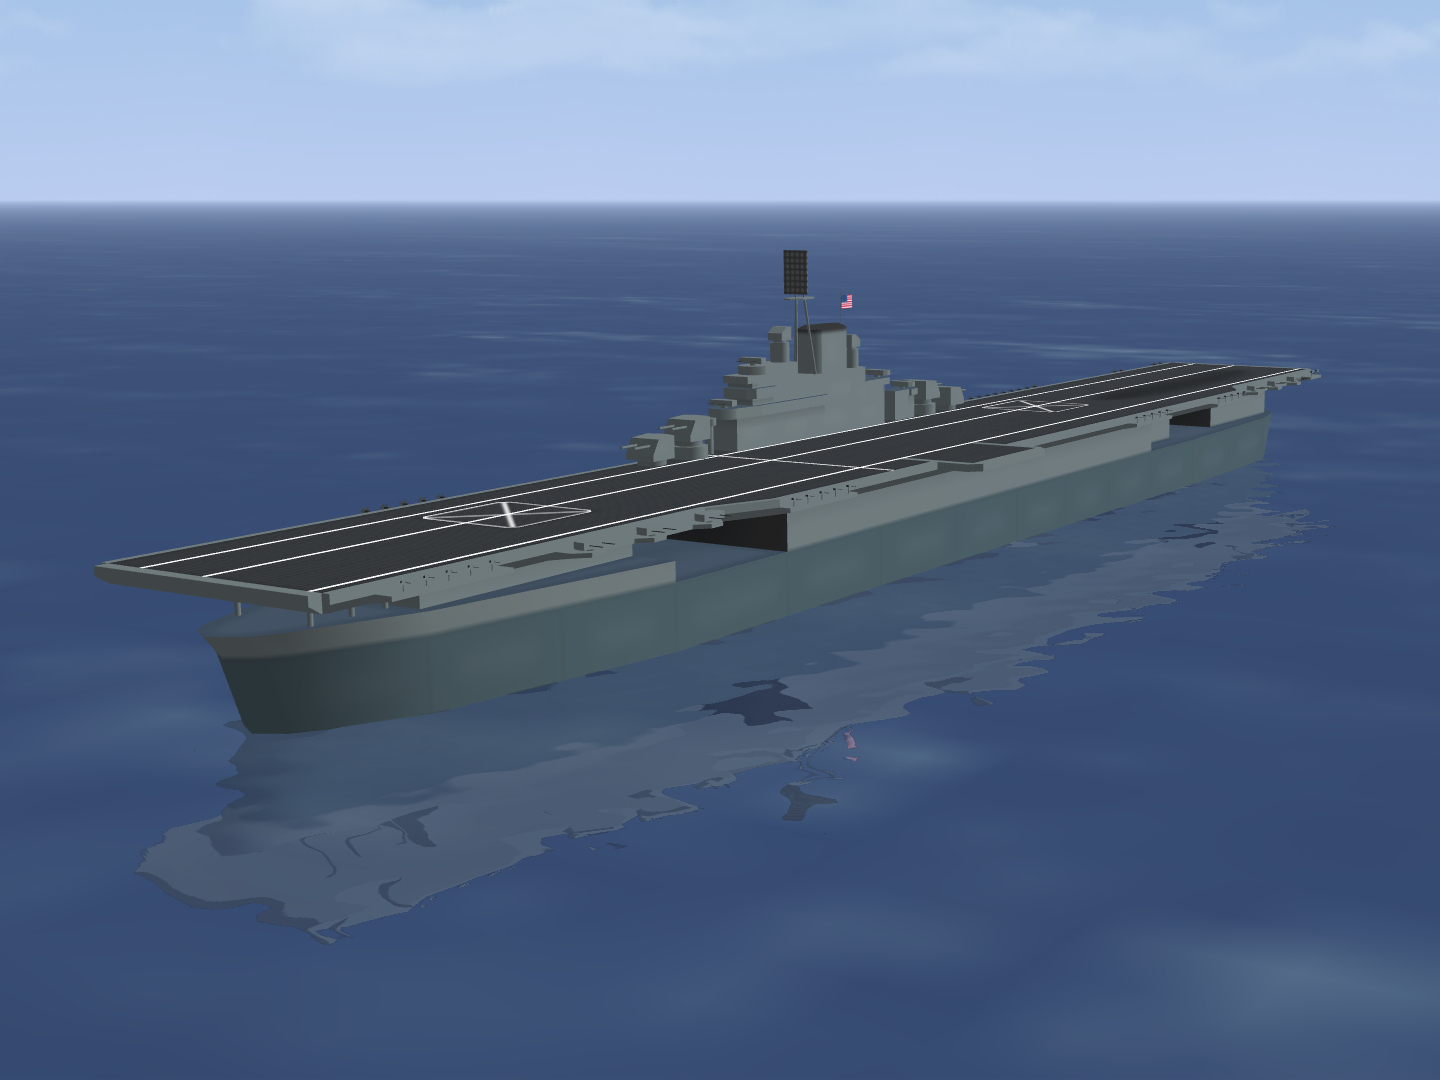 Essex-class aircraft carrier